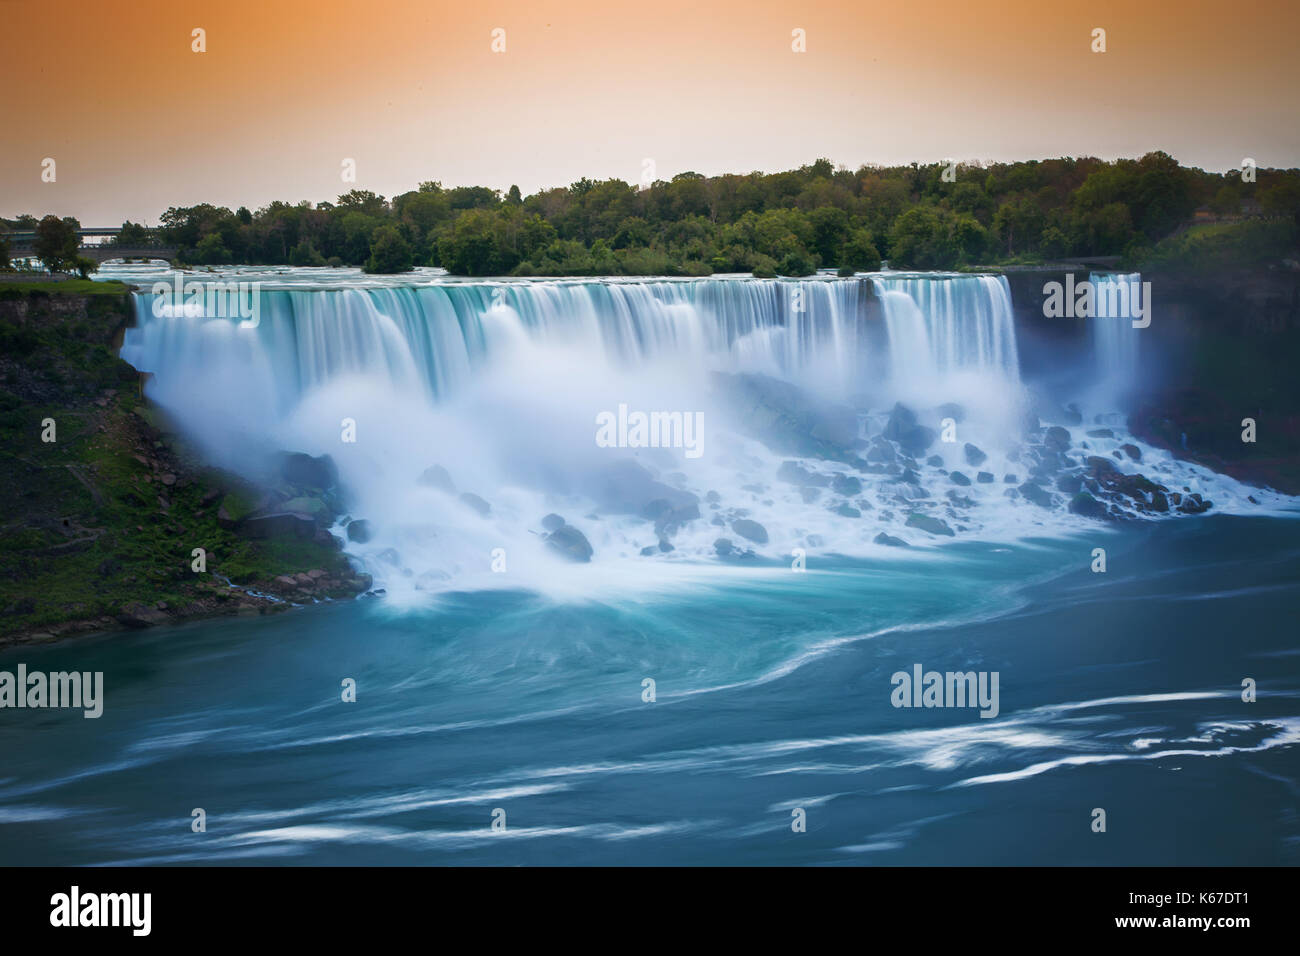 American Falls and Bridal Veil Falls at sunrise, Niagara Falls, New York, United States Stock Photo